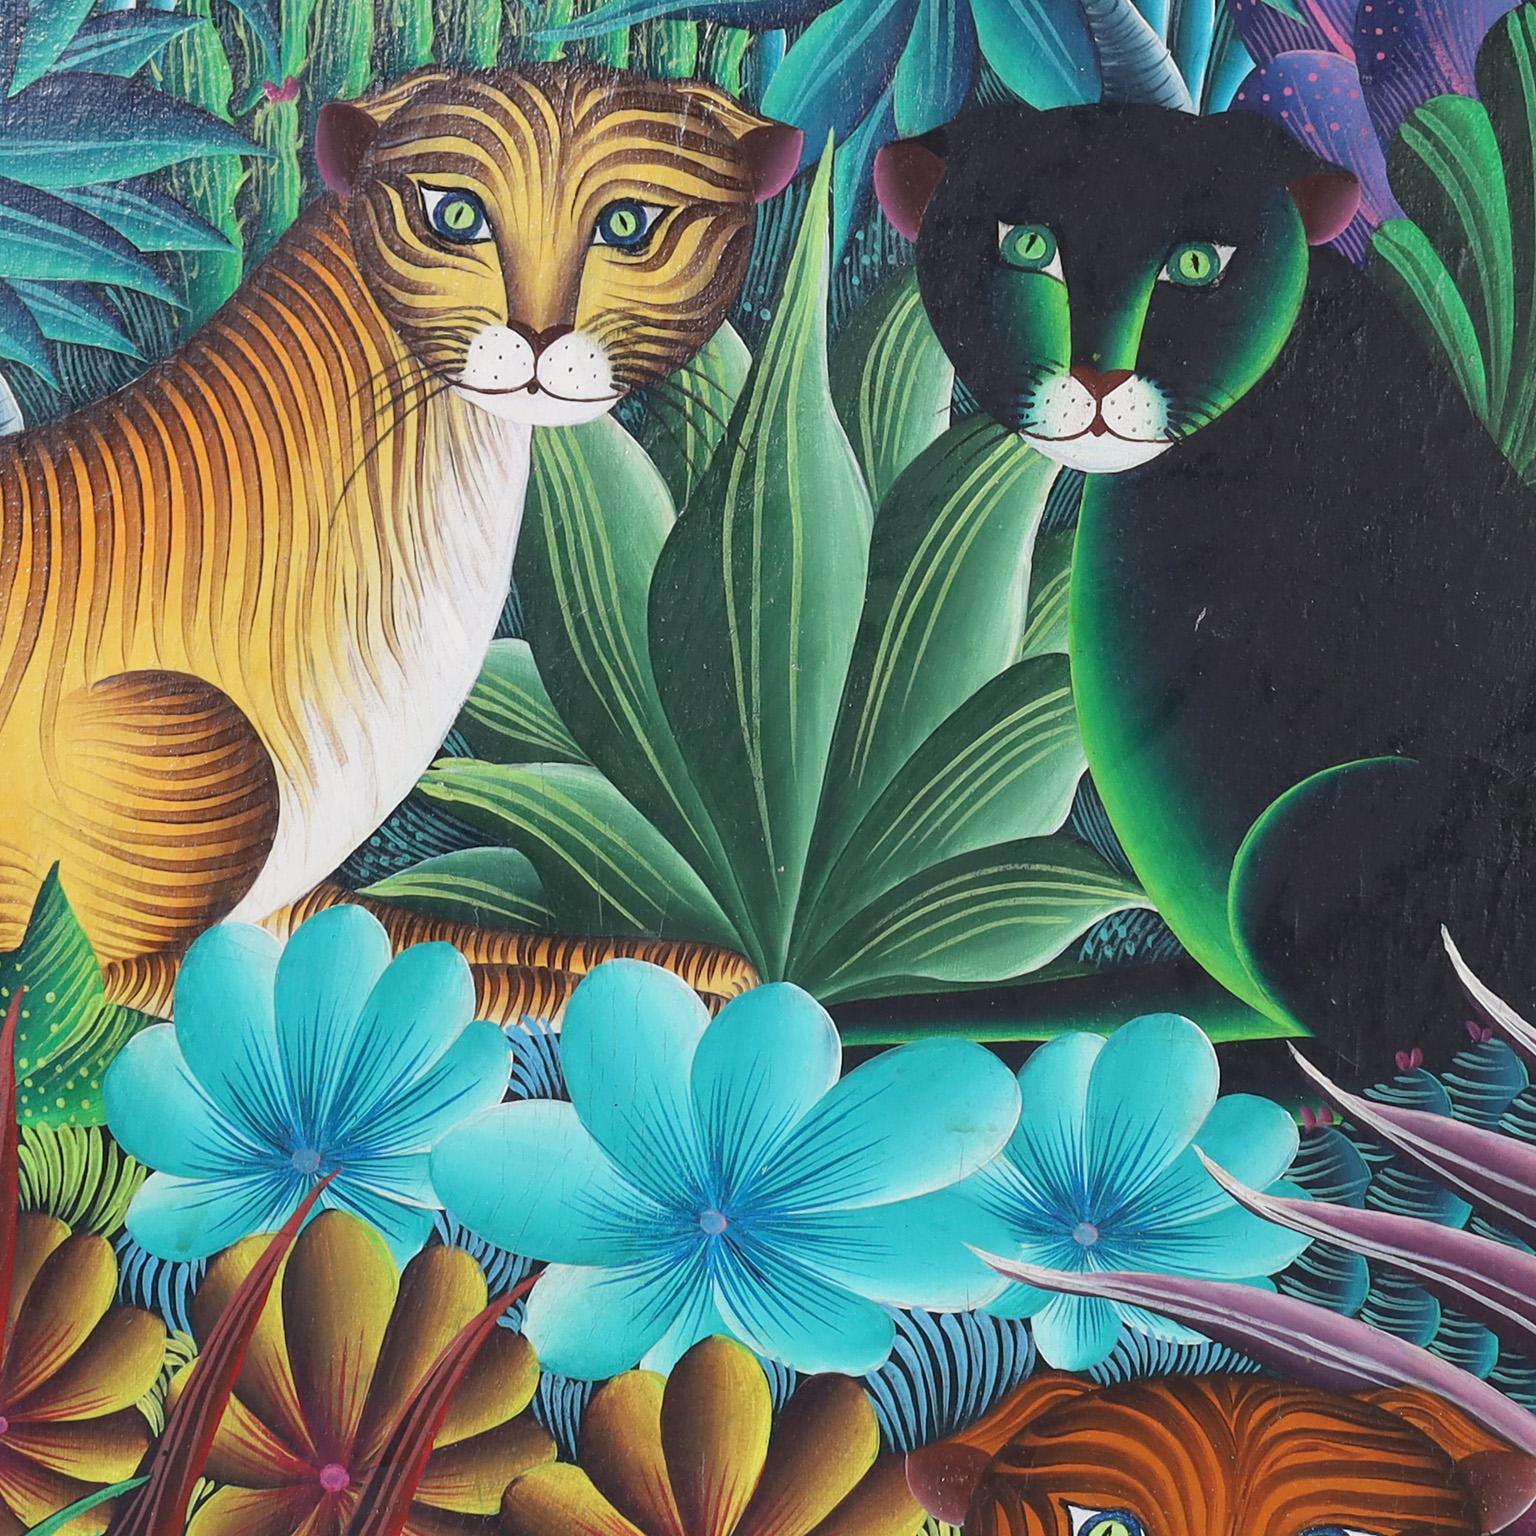 Peinture acrylique haïtienne sur toile représentant de grands félins stylisés dans un décor de jungle luxuriante avec des arbres fruitiers, des palmiers et une flore tropicale variée. Signée par l'artiste de renom M.Paul et présentée dans un cadre